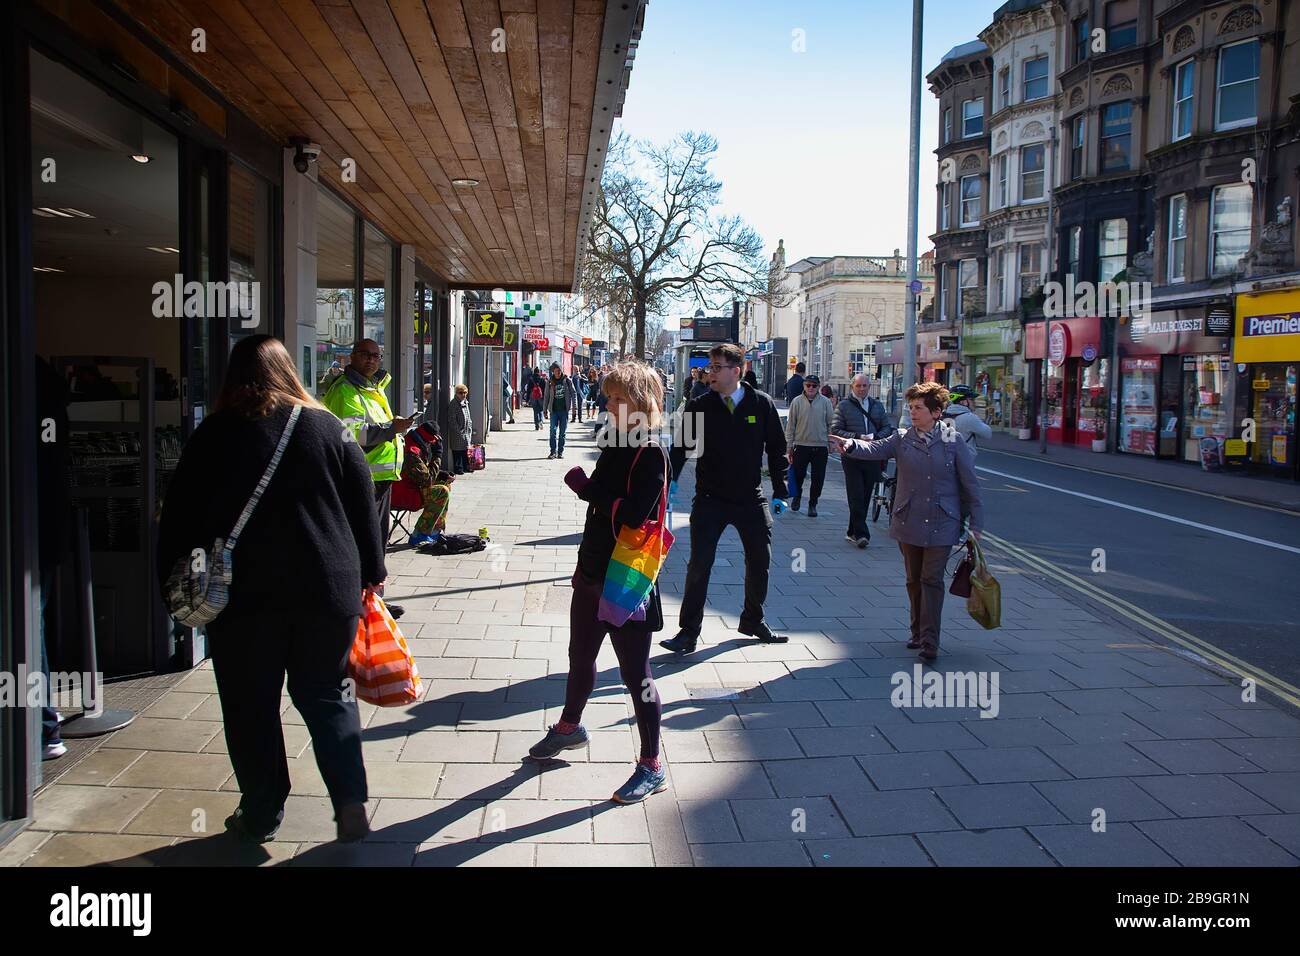 Inghilterra, East Sussex, Brighton, persone in coda con le misure di distanza sociale messe in atto dal supermercato Waitrose per limitare le persone che entrano nel negozio. Foto Stock